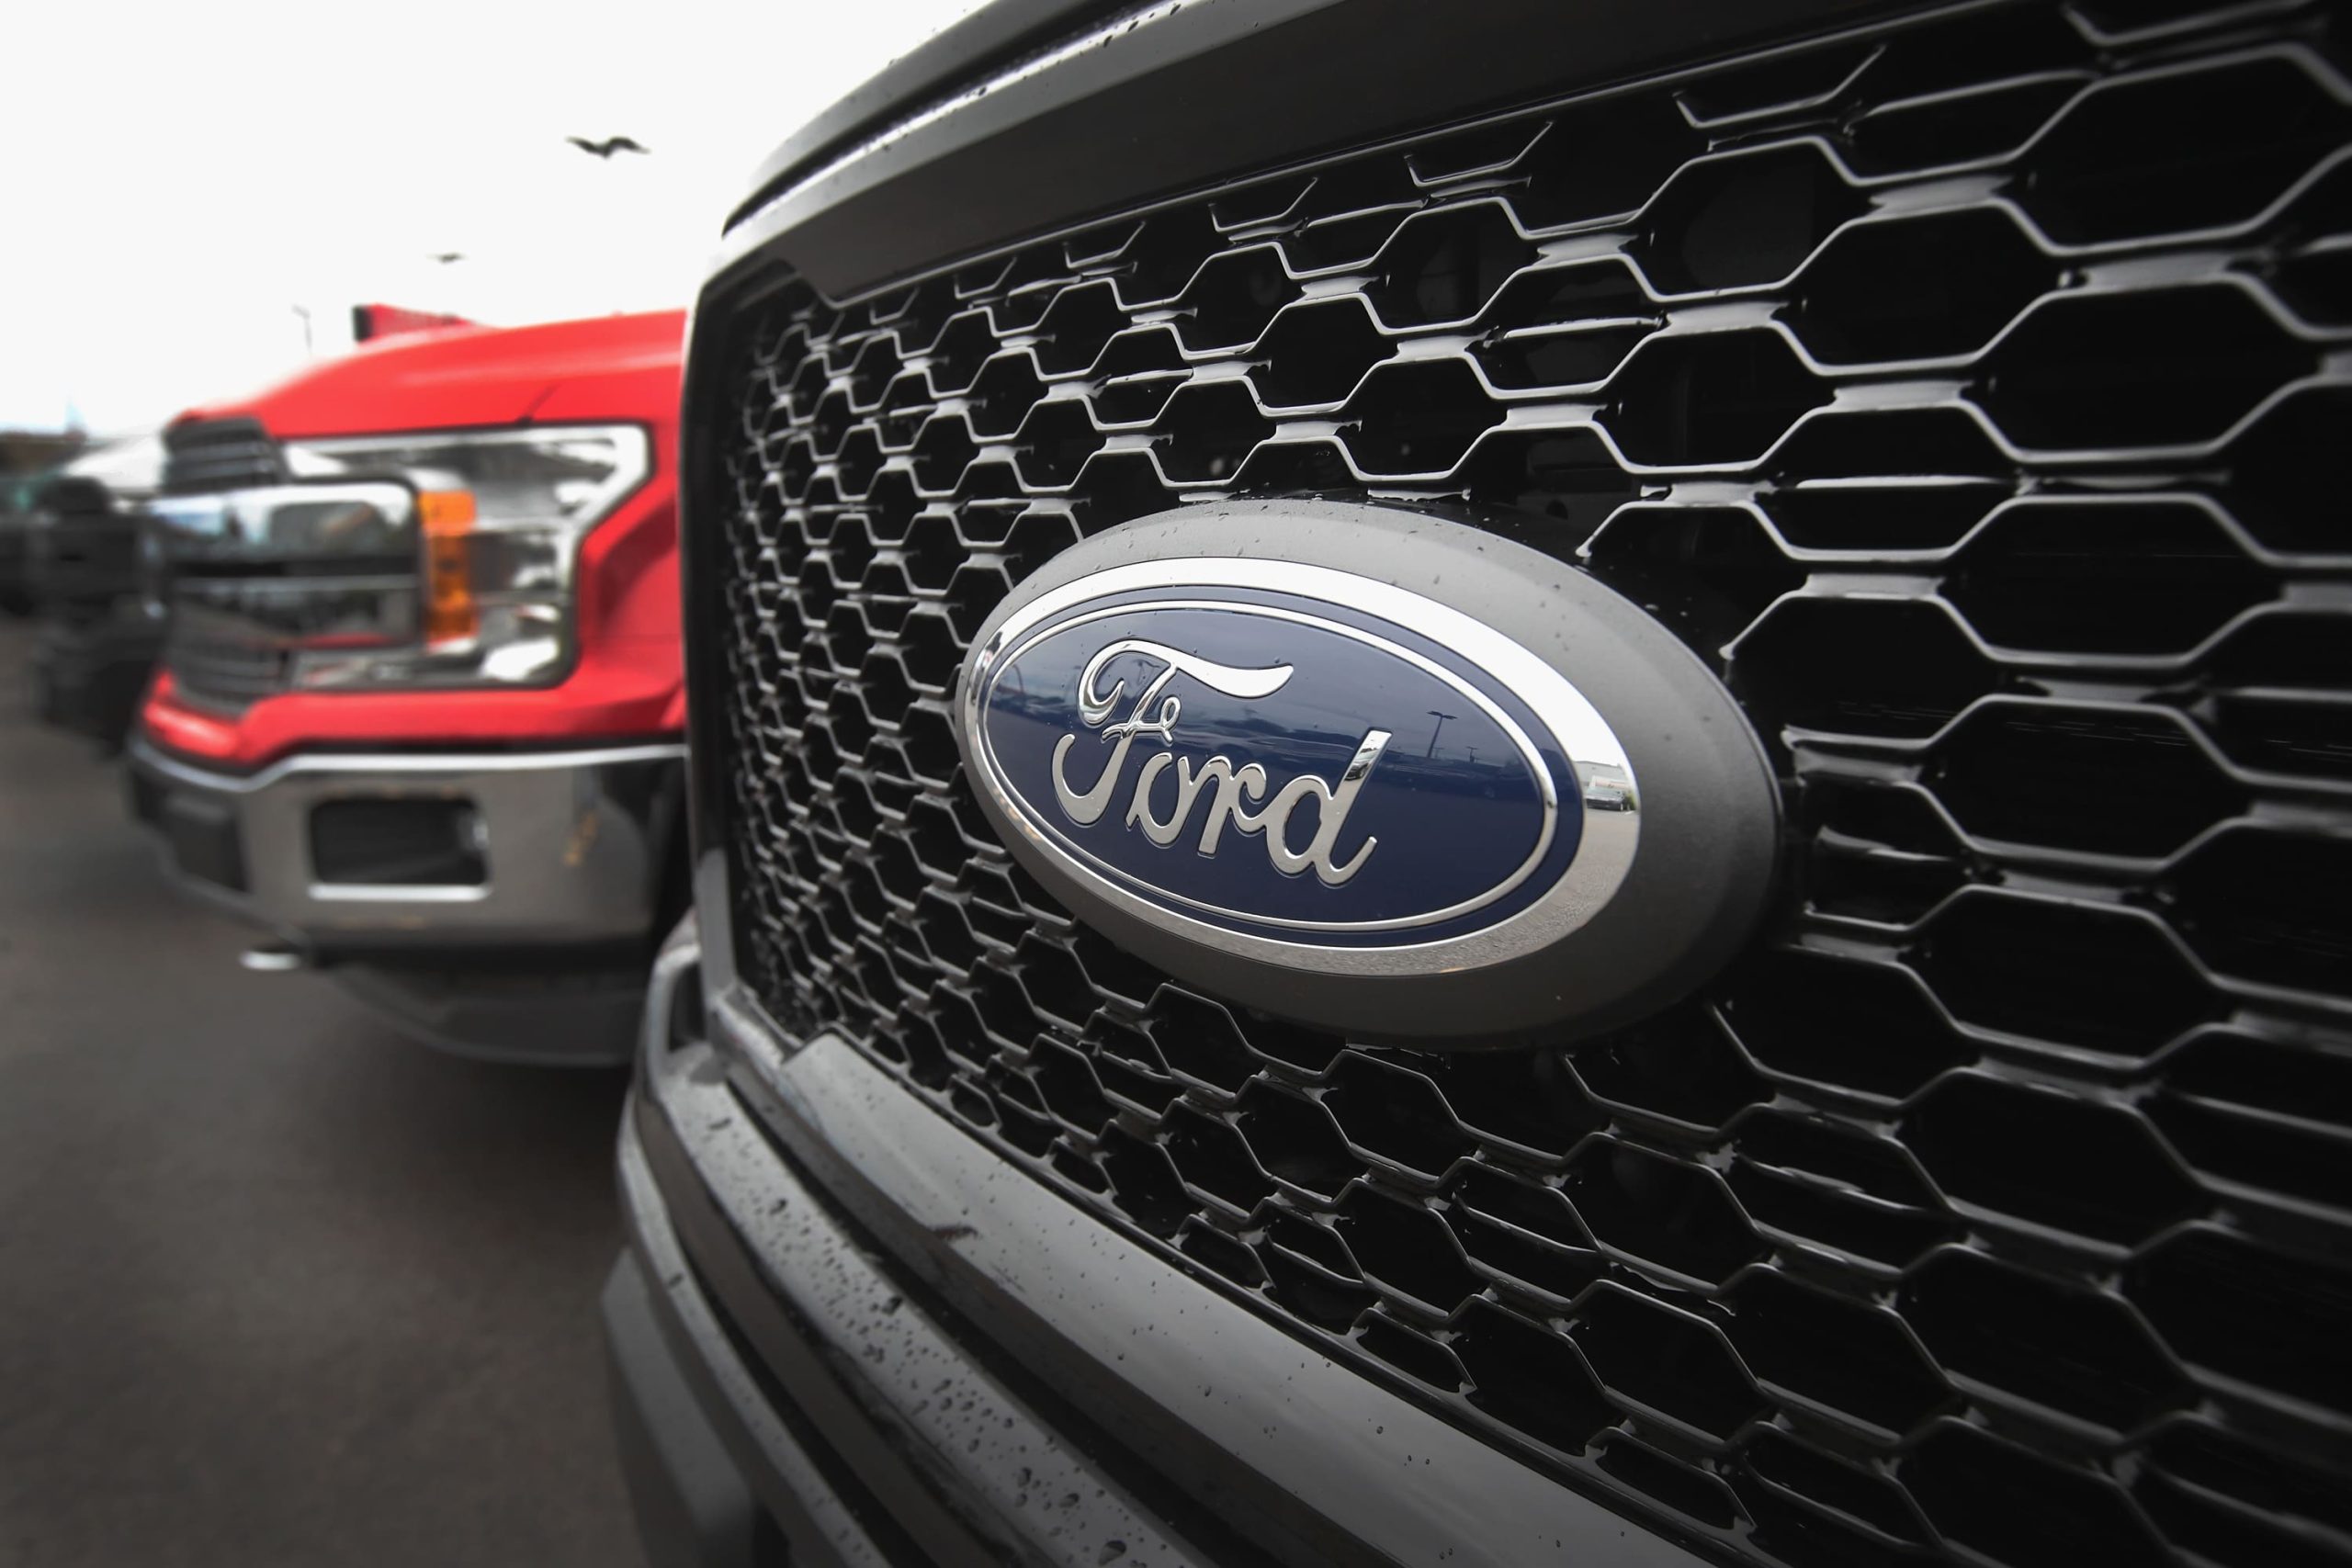 Ford firma un acuerdo de pagos de cinco años con Stripe para impulsar el comercio electrónico